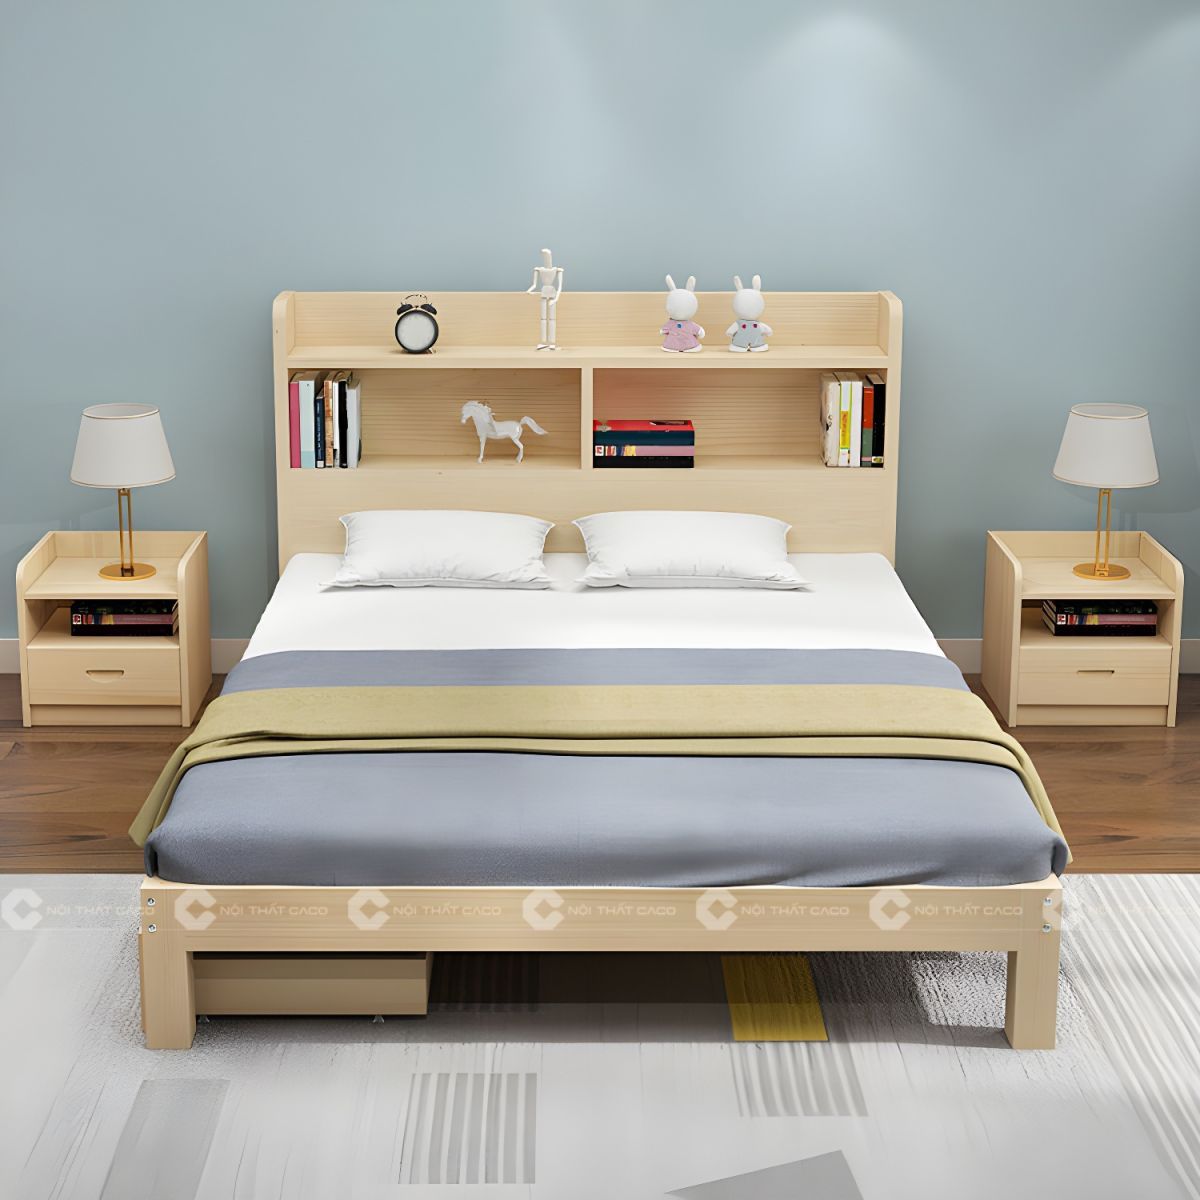 Giường ngủ gỗ tự nhiên màu vàng vân gỗ hiện đại